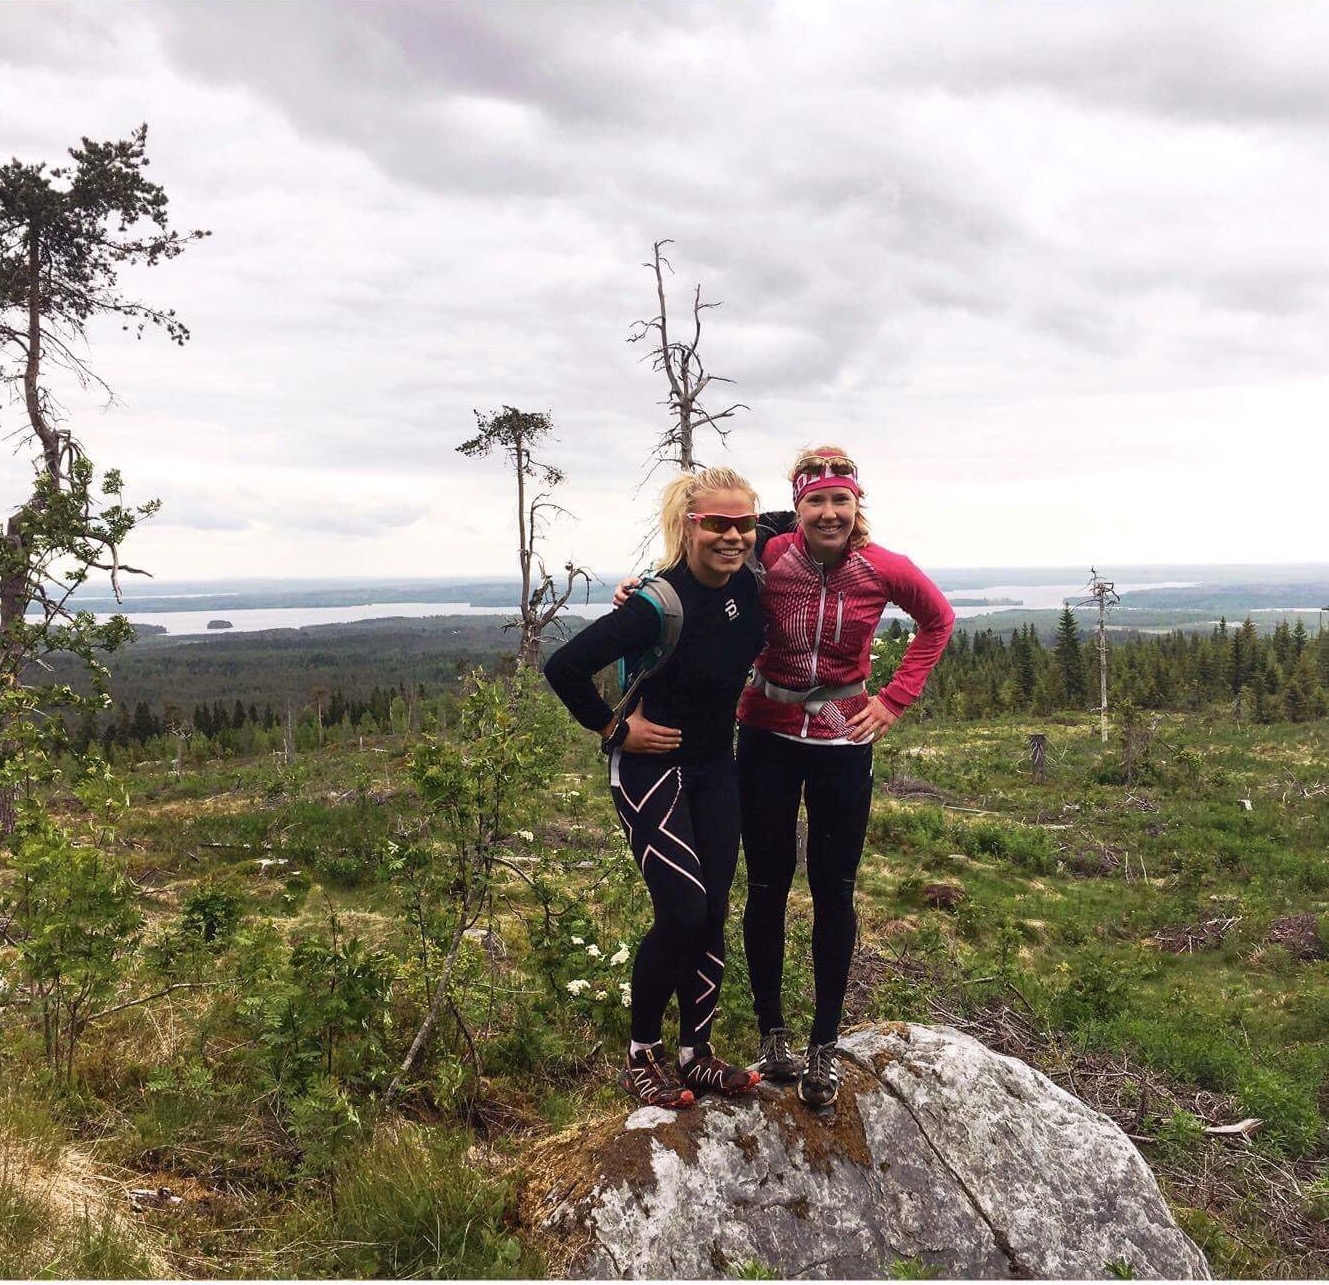 Jasmi Joensuu (left) and Krista Niiranen on a trail run outside of Vuokatti, Finland. (Courtesy photo)